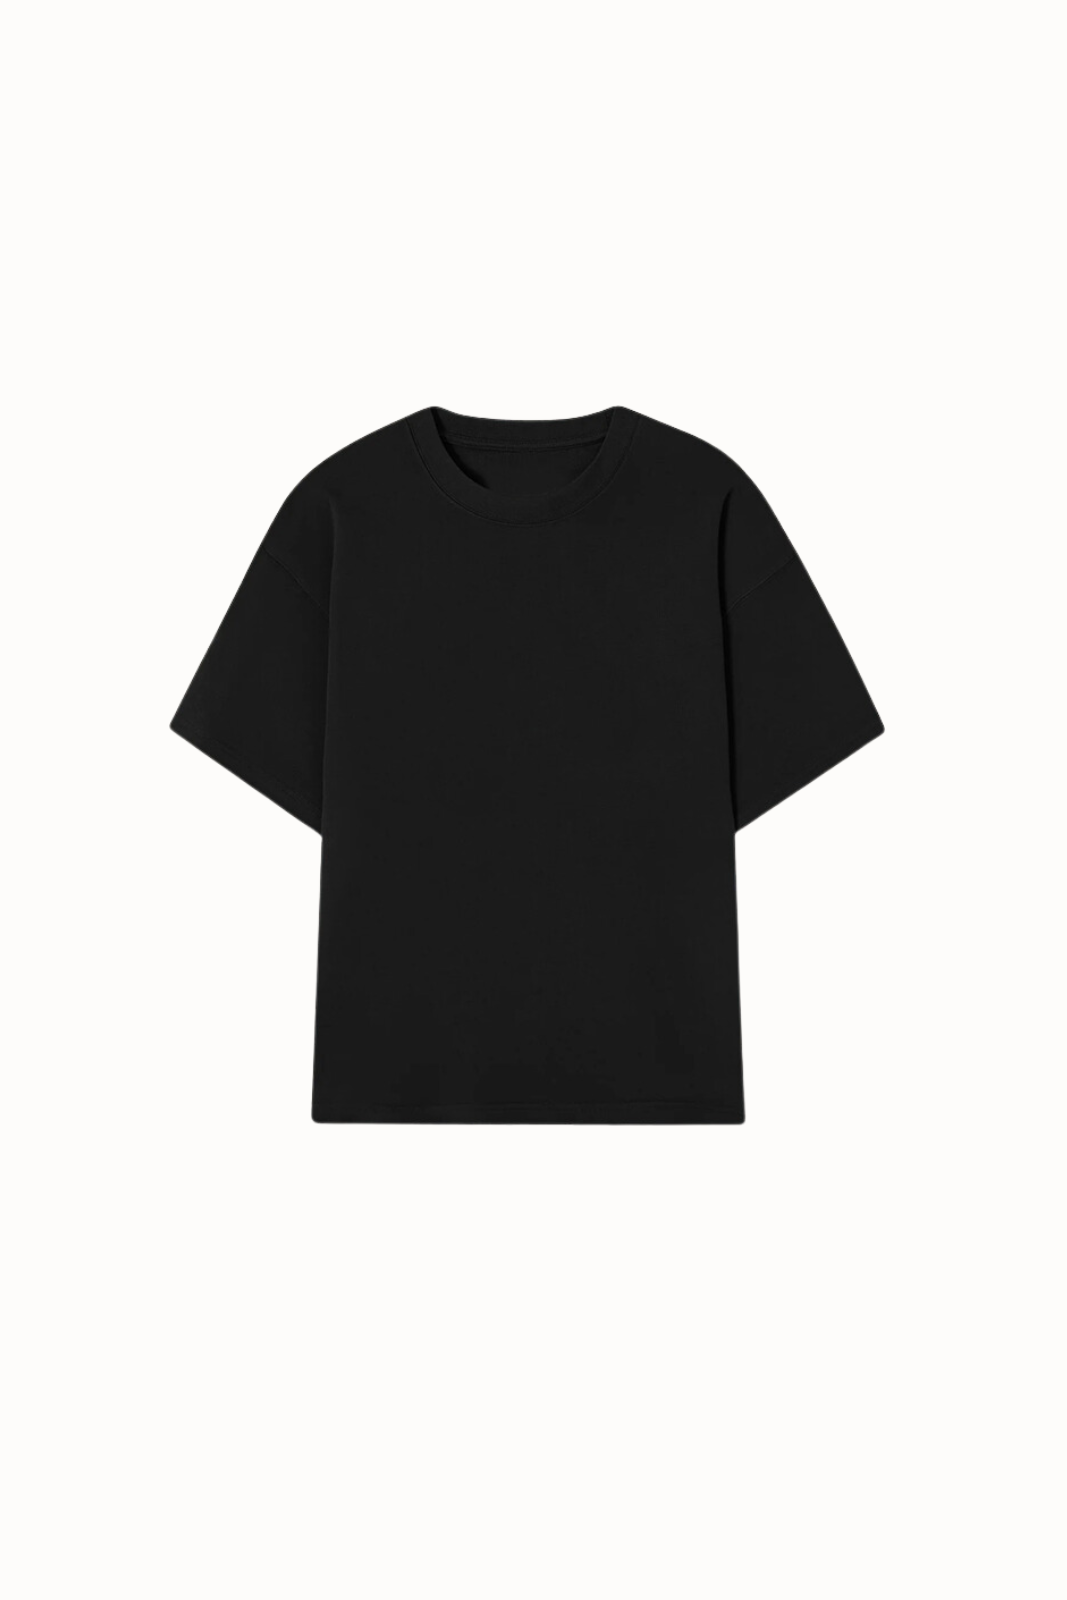 The Plains T-Shirt V2 / Black